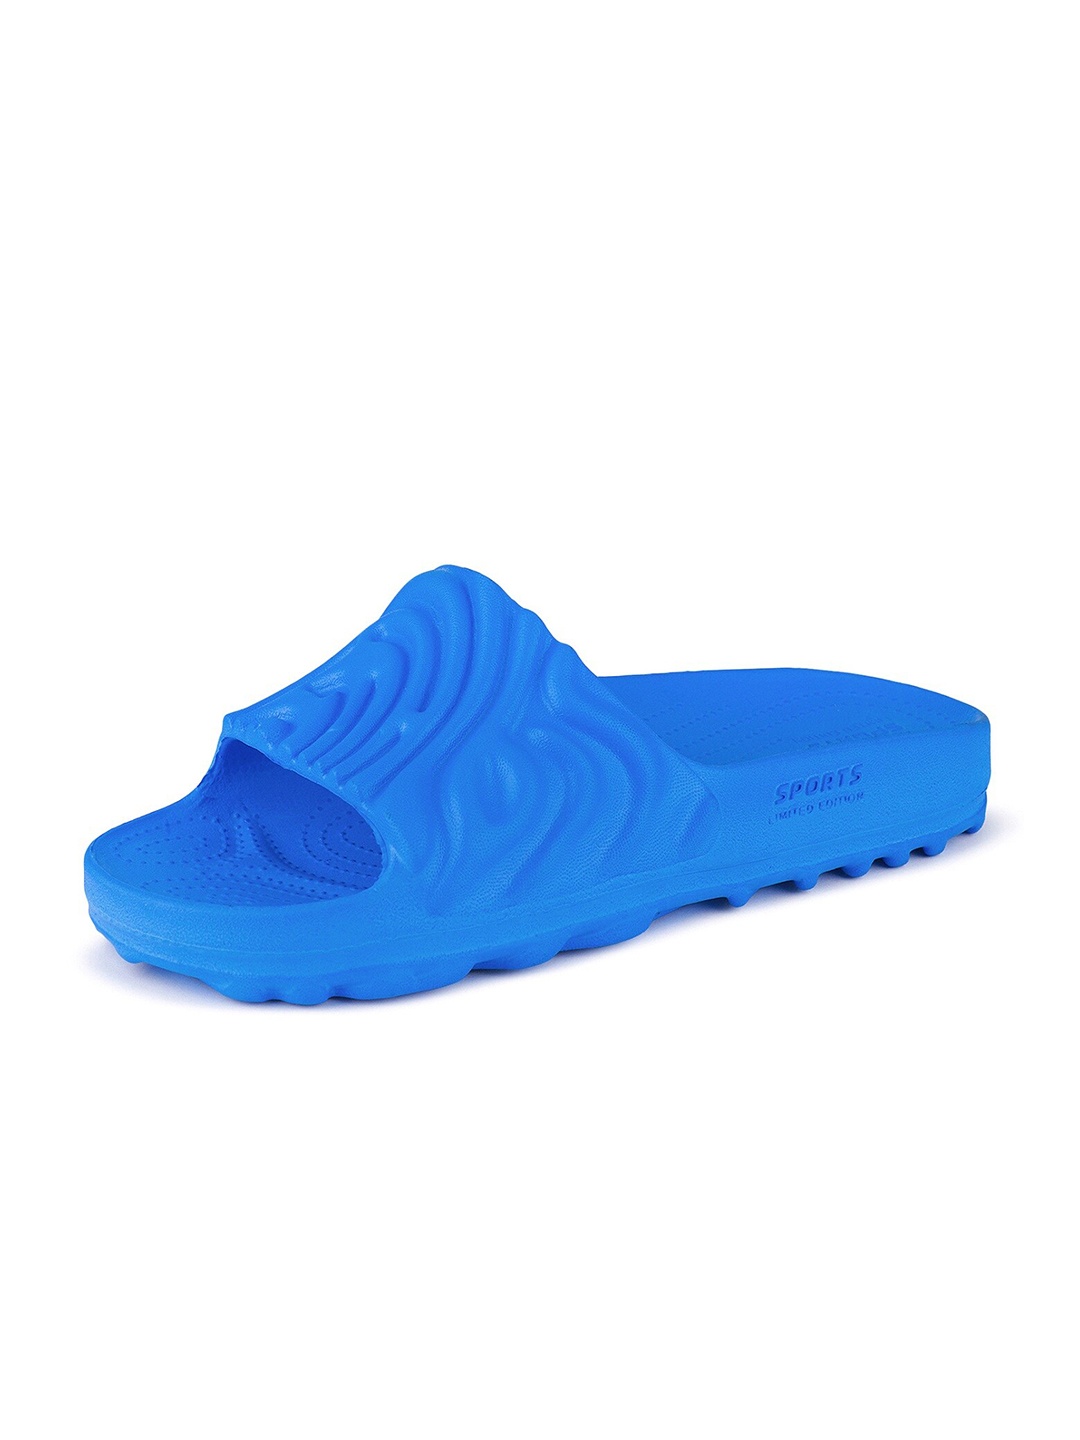 

BERSACHE Men Canvas Comfort Sandals, Blue